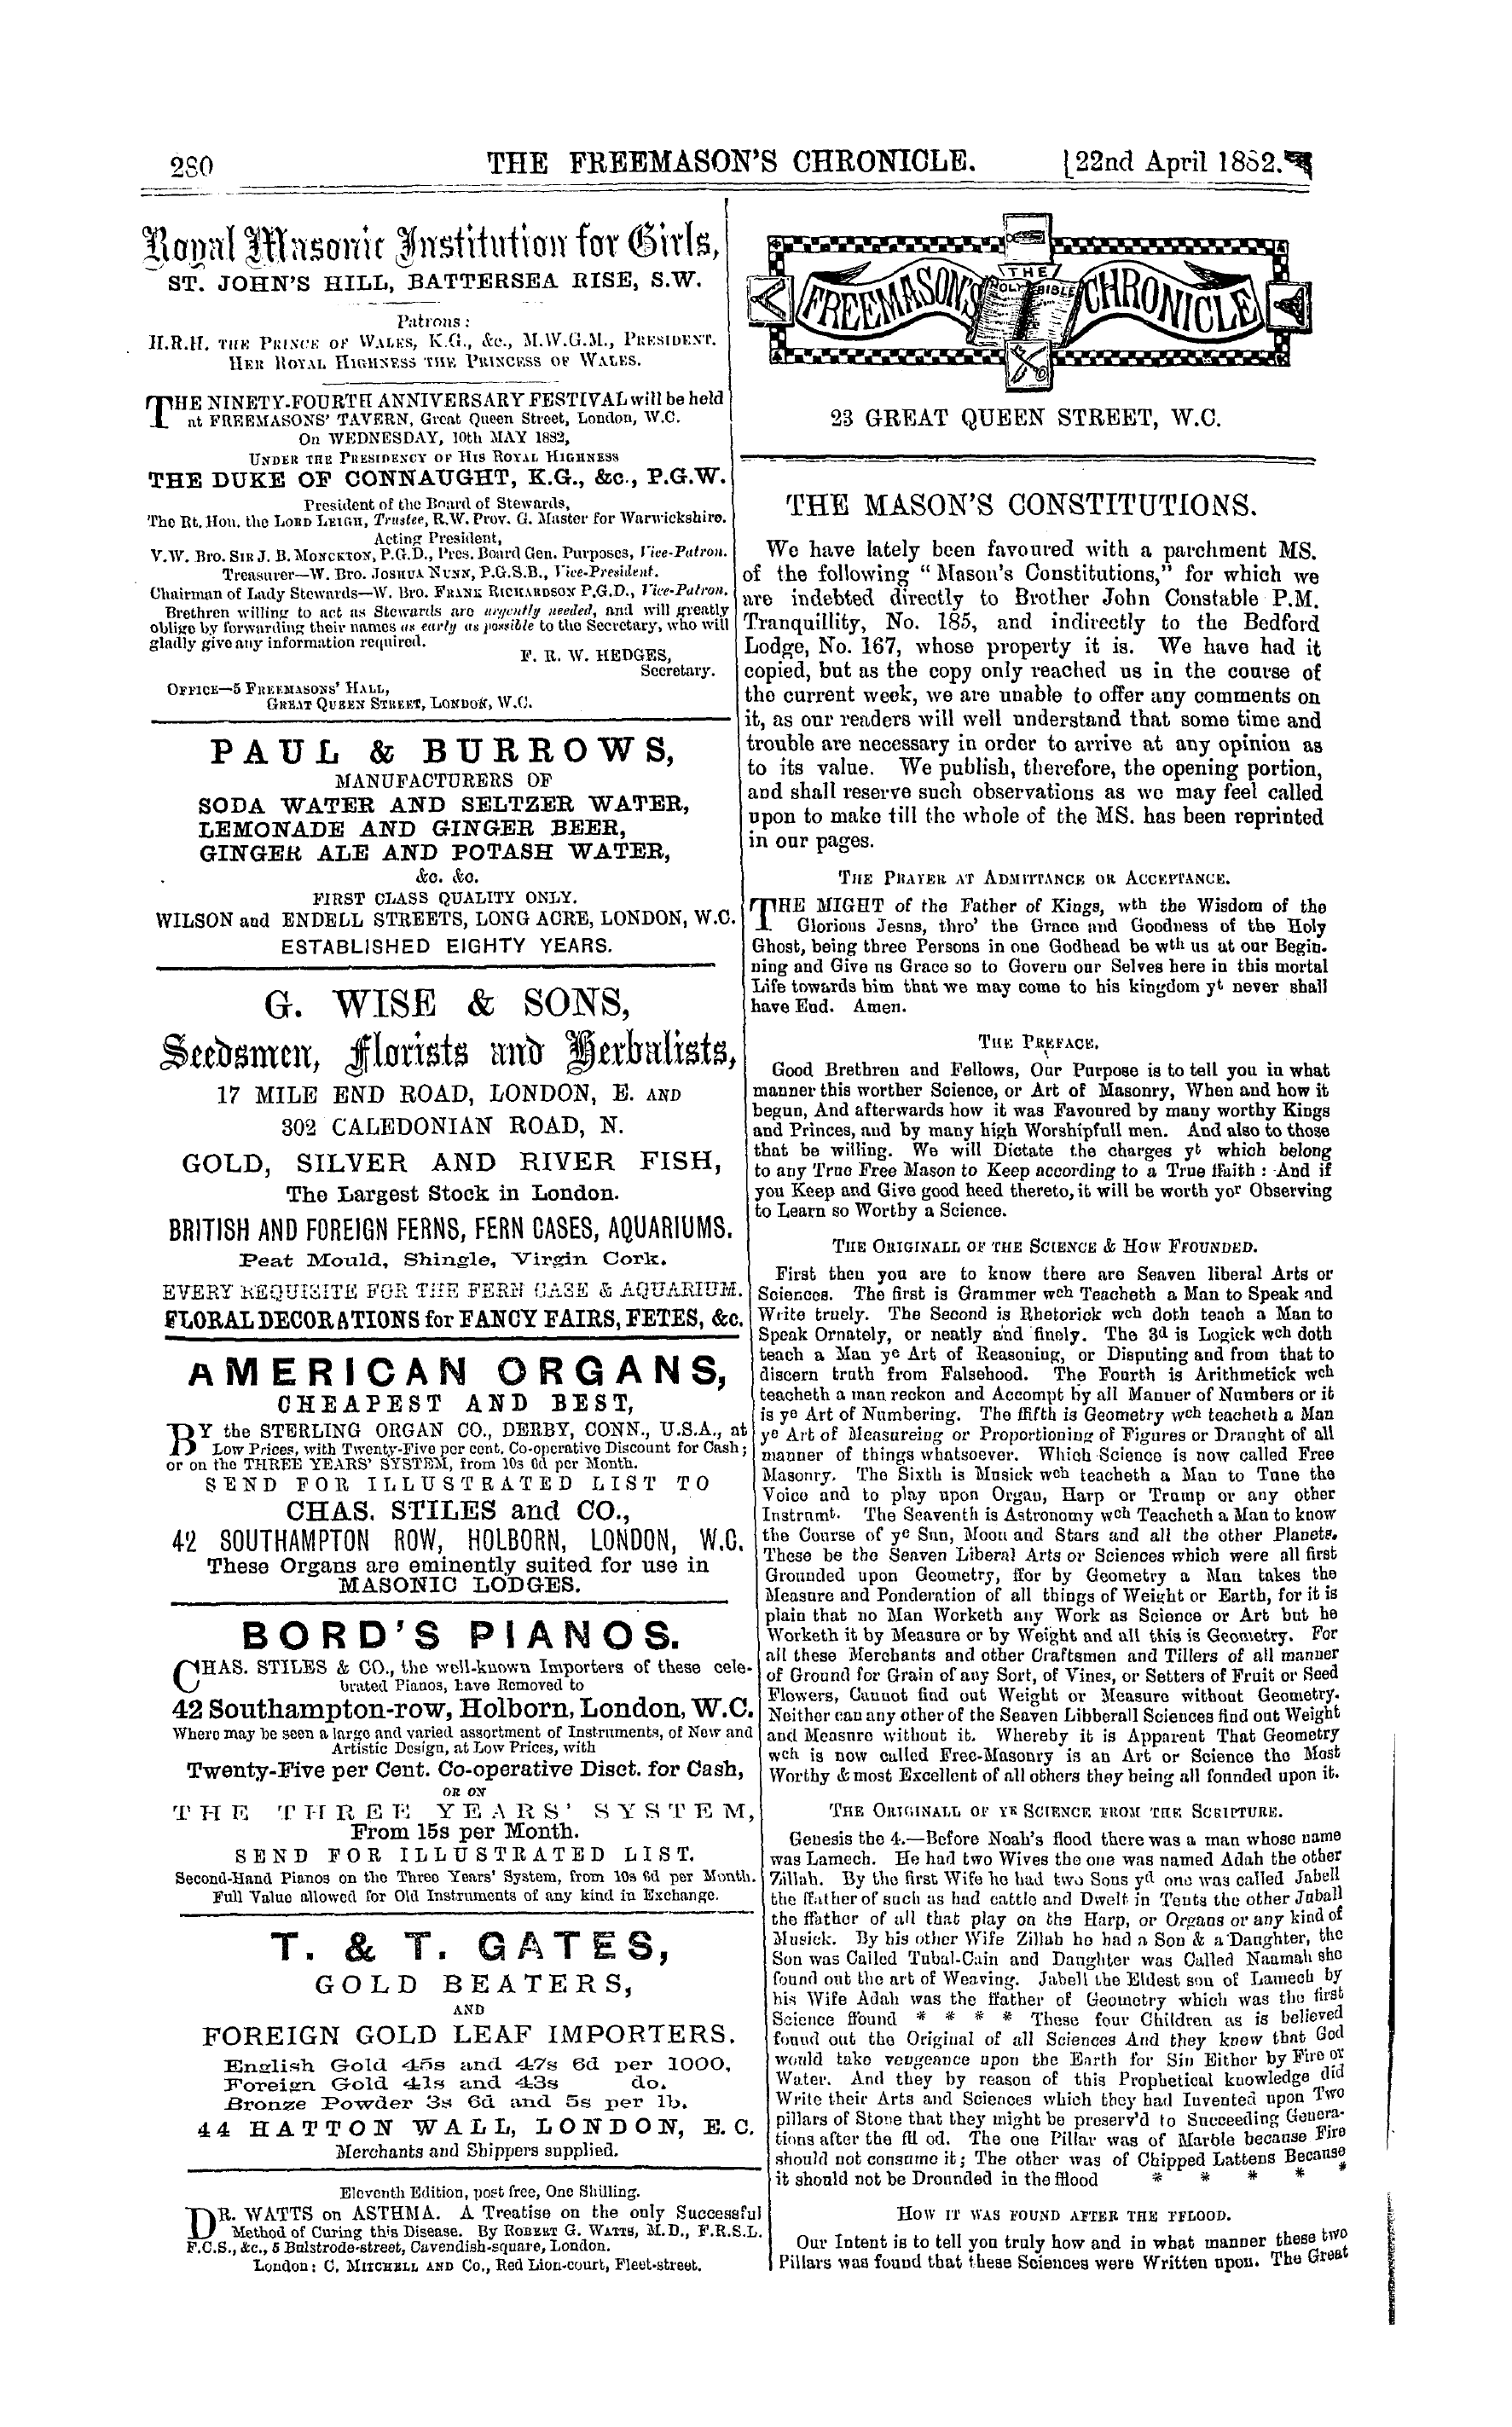 The Freemason's Chronicle: 1882-04-22 - Ar00808